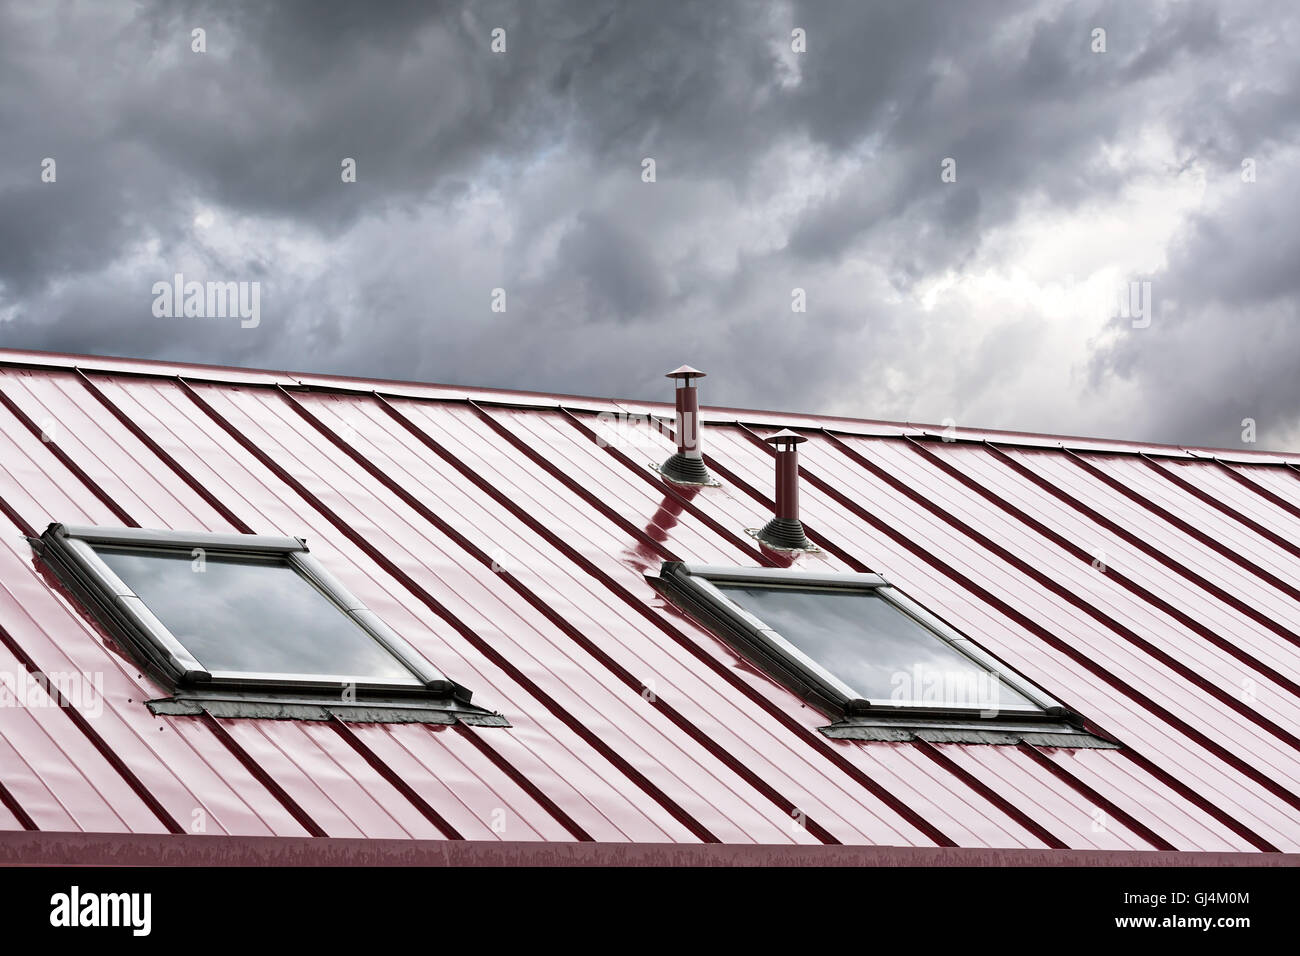 Nouveau toit métallique gris foncé avec des lucarnes contre ciel nuageux Banque D'Images